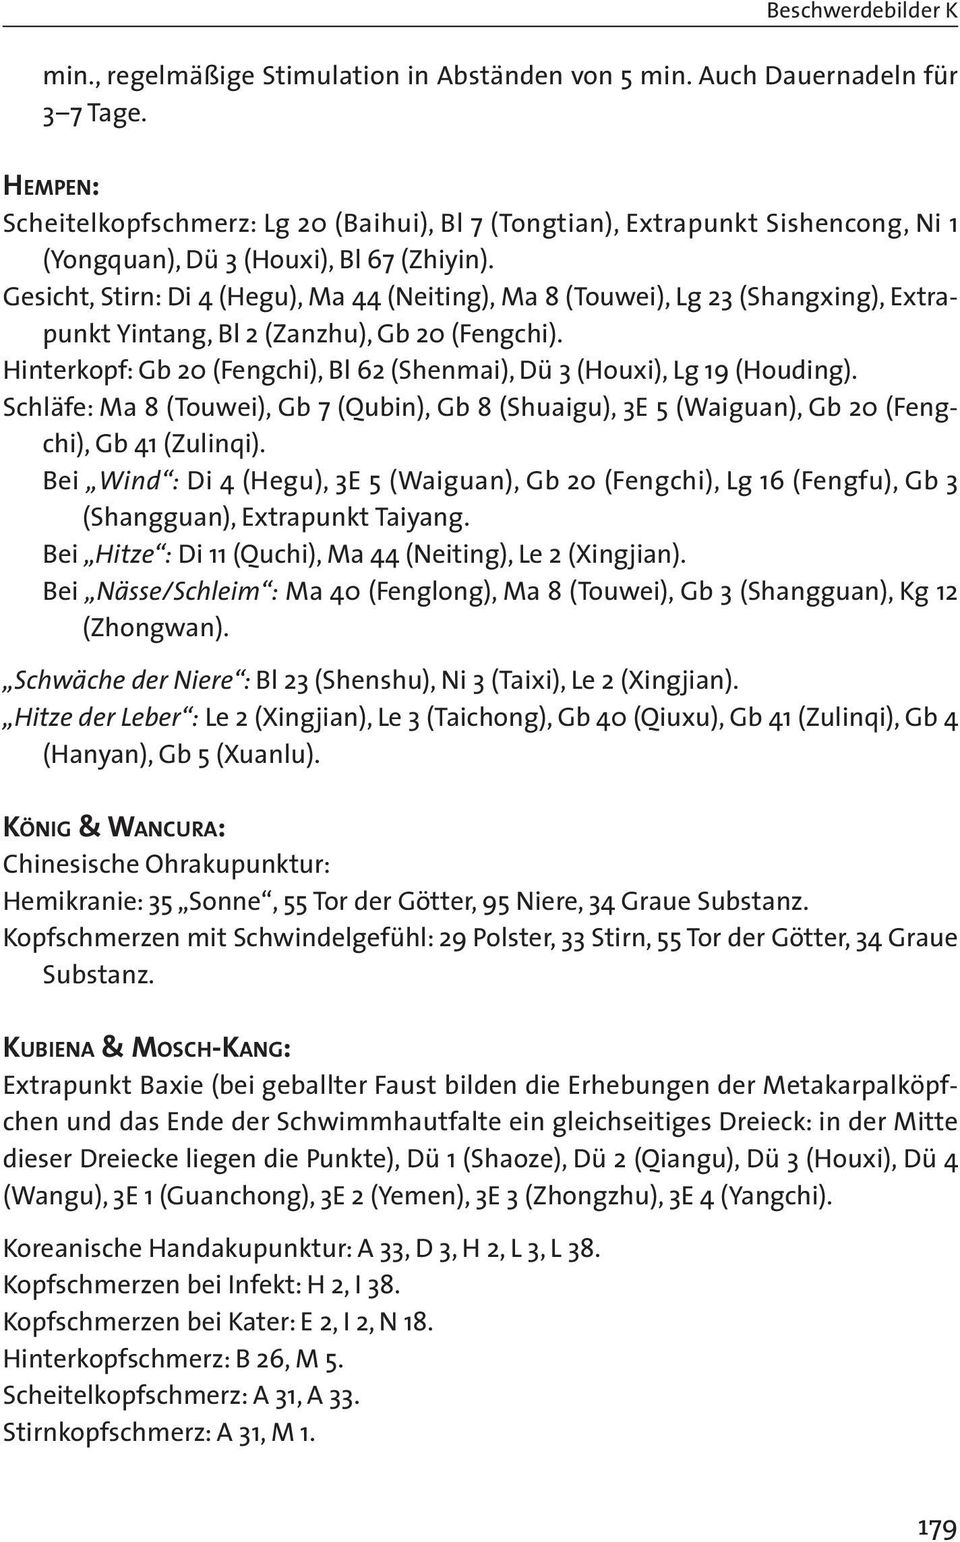 Gesicht, Stirn: Di 4 (Hegu), Ma 44 (Neiting), Ma 8 (Touwei), Lg 23 (Shangxing), Extrapunkt Yintang, Bl 2 (Zanzhu), Gb 20 (Fengchi).